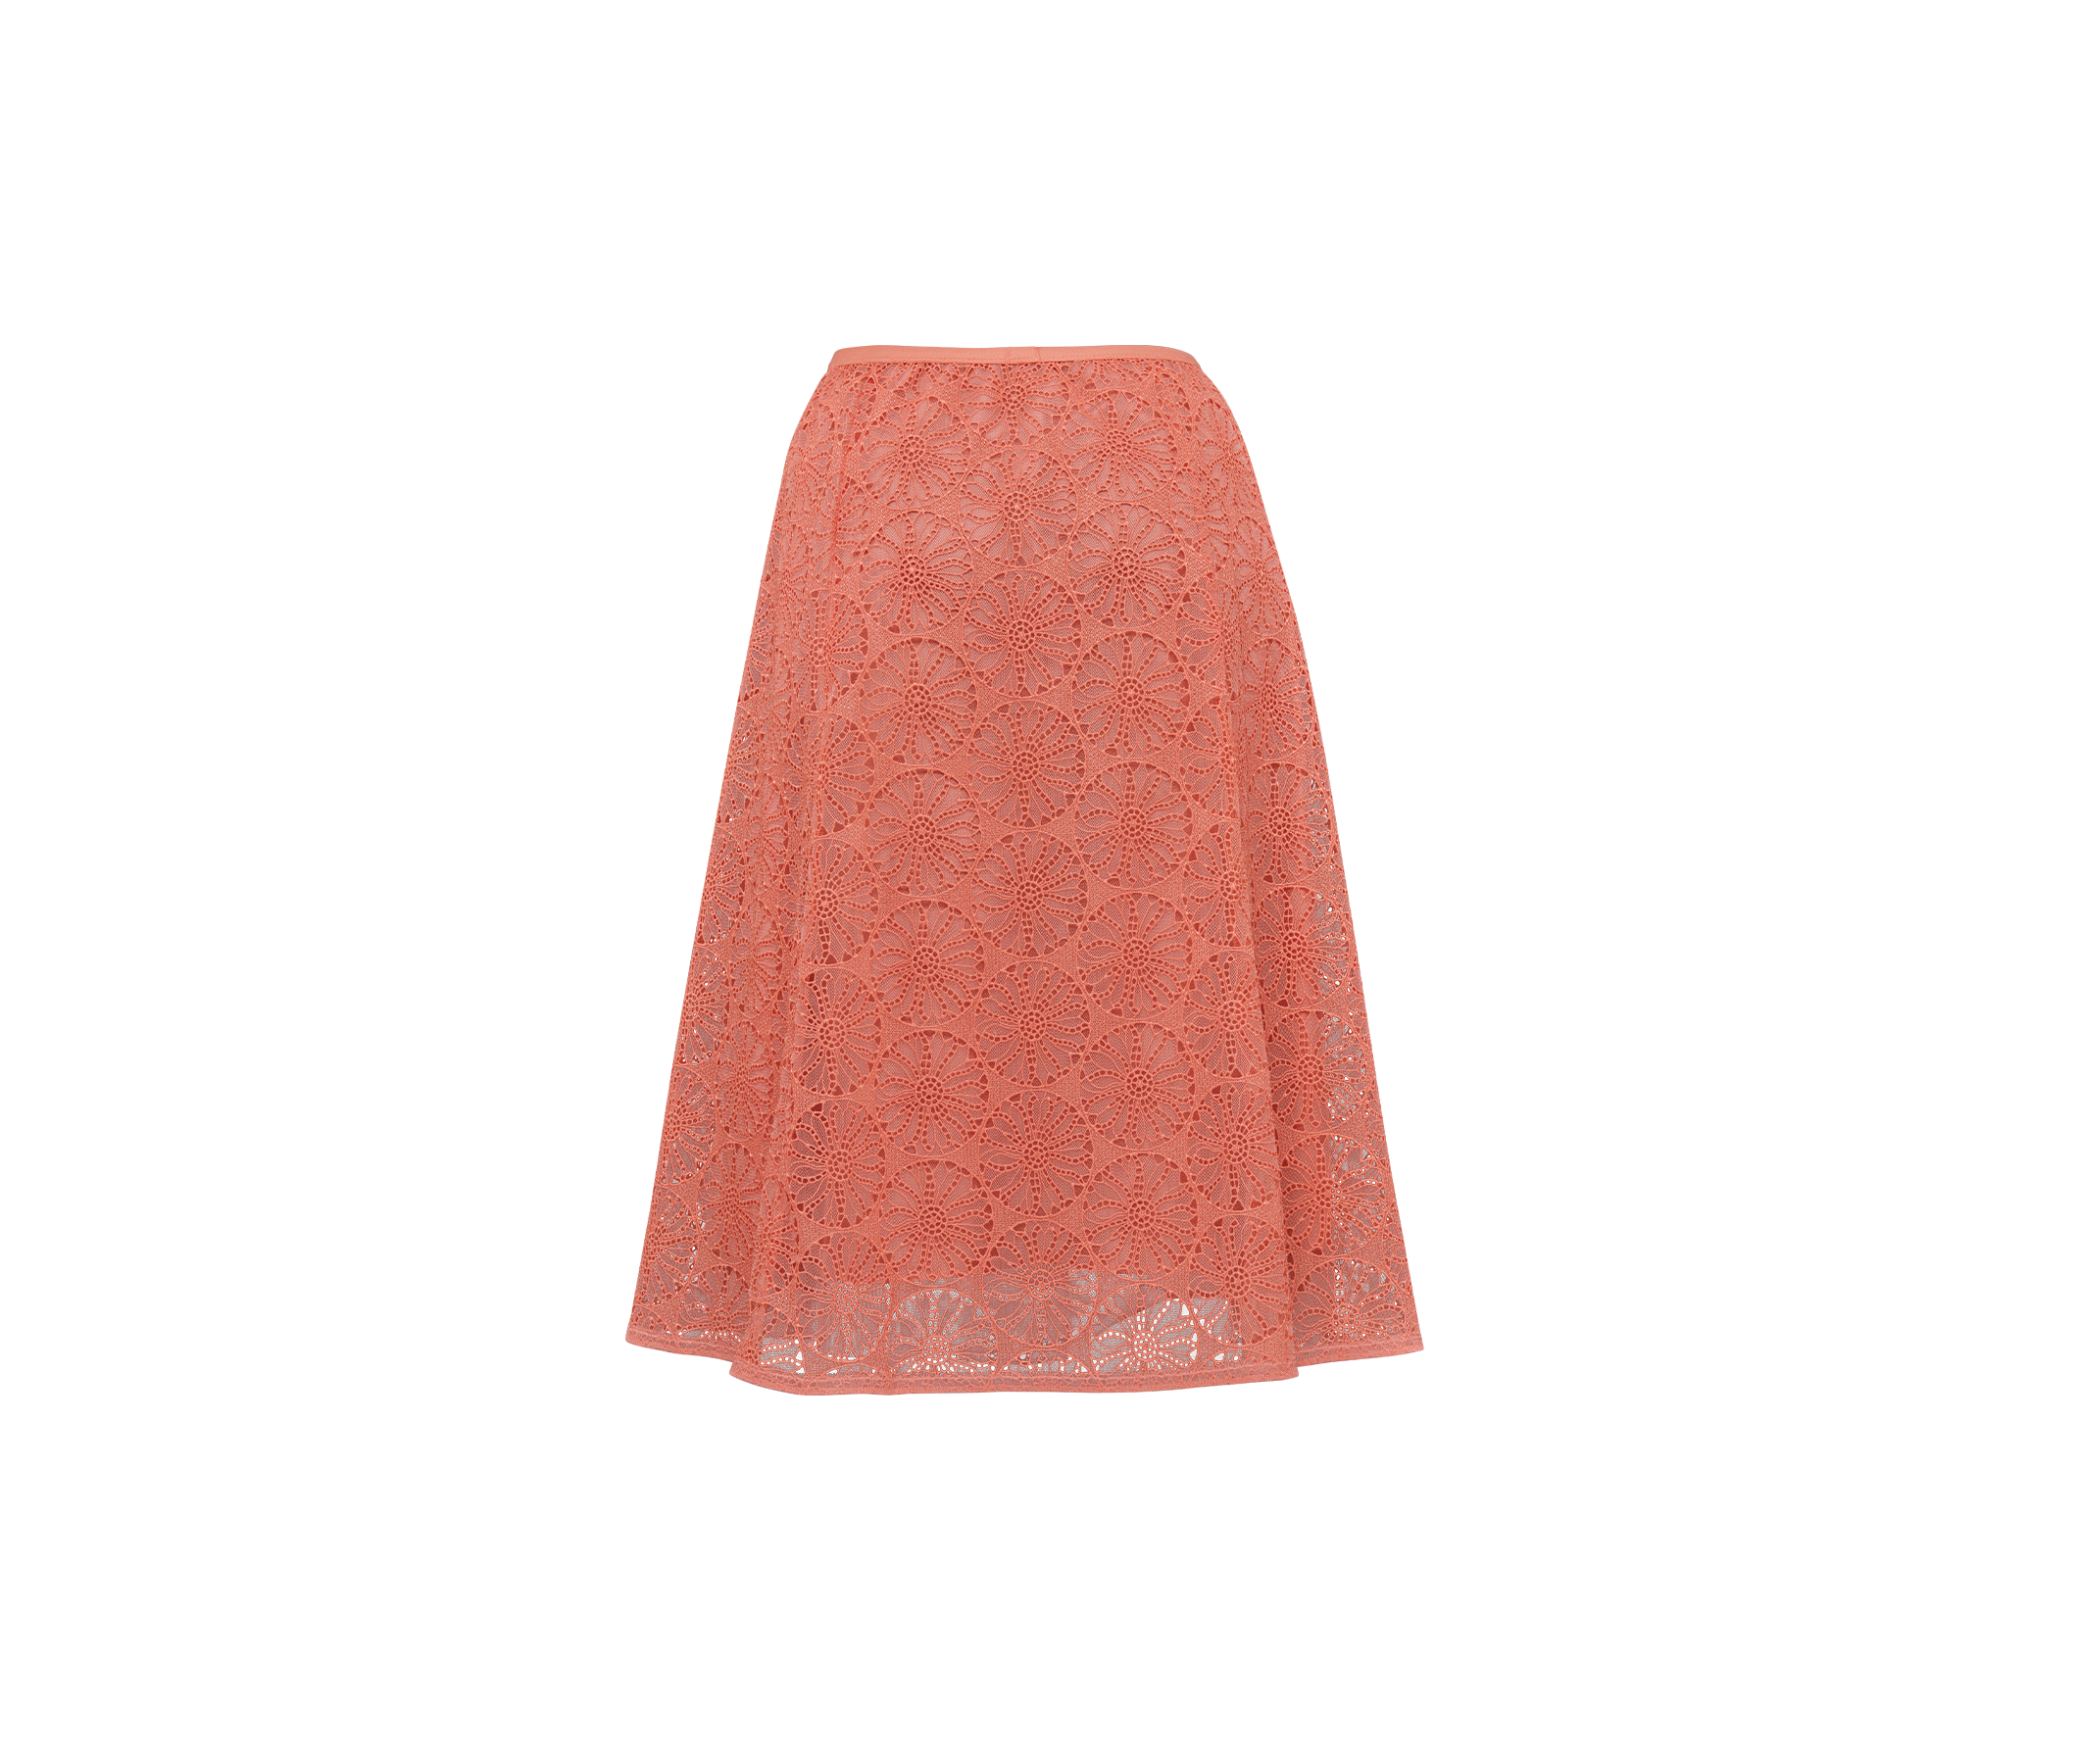 オリエンタルな雰囲気を醸し出すフレアースカートの商品画像2